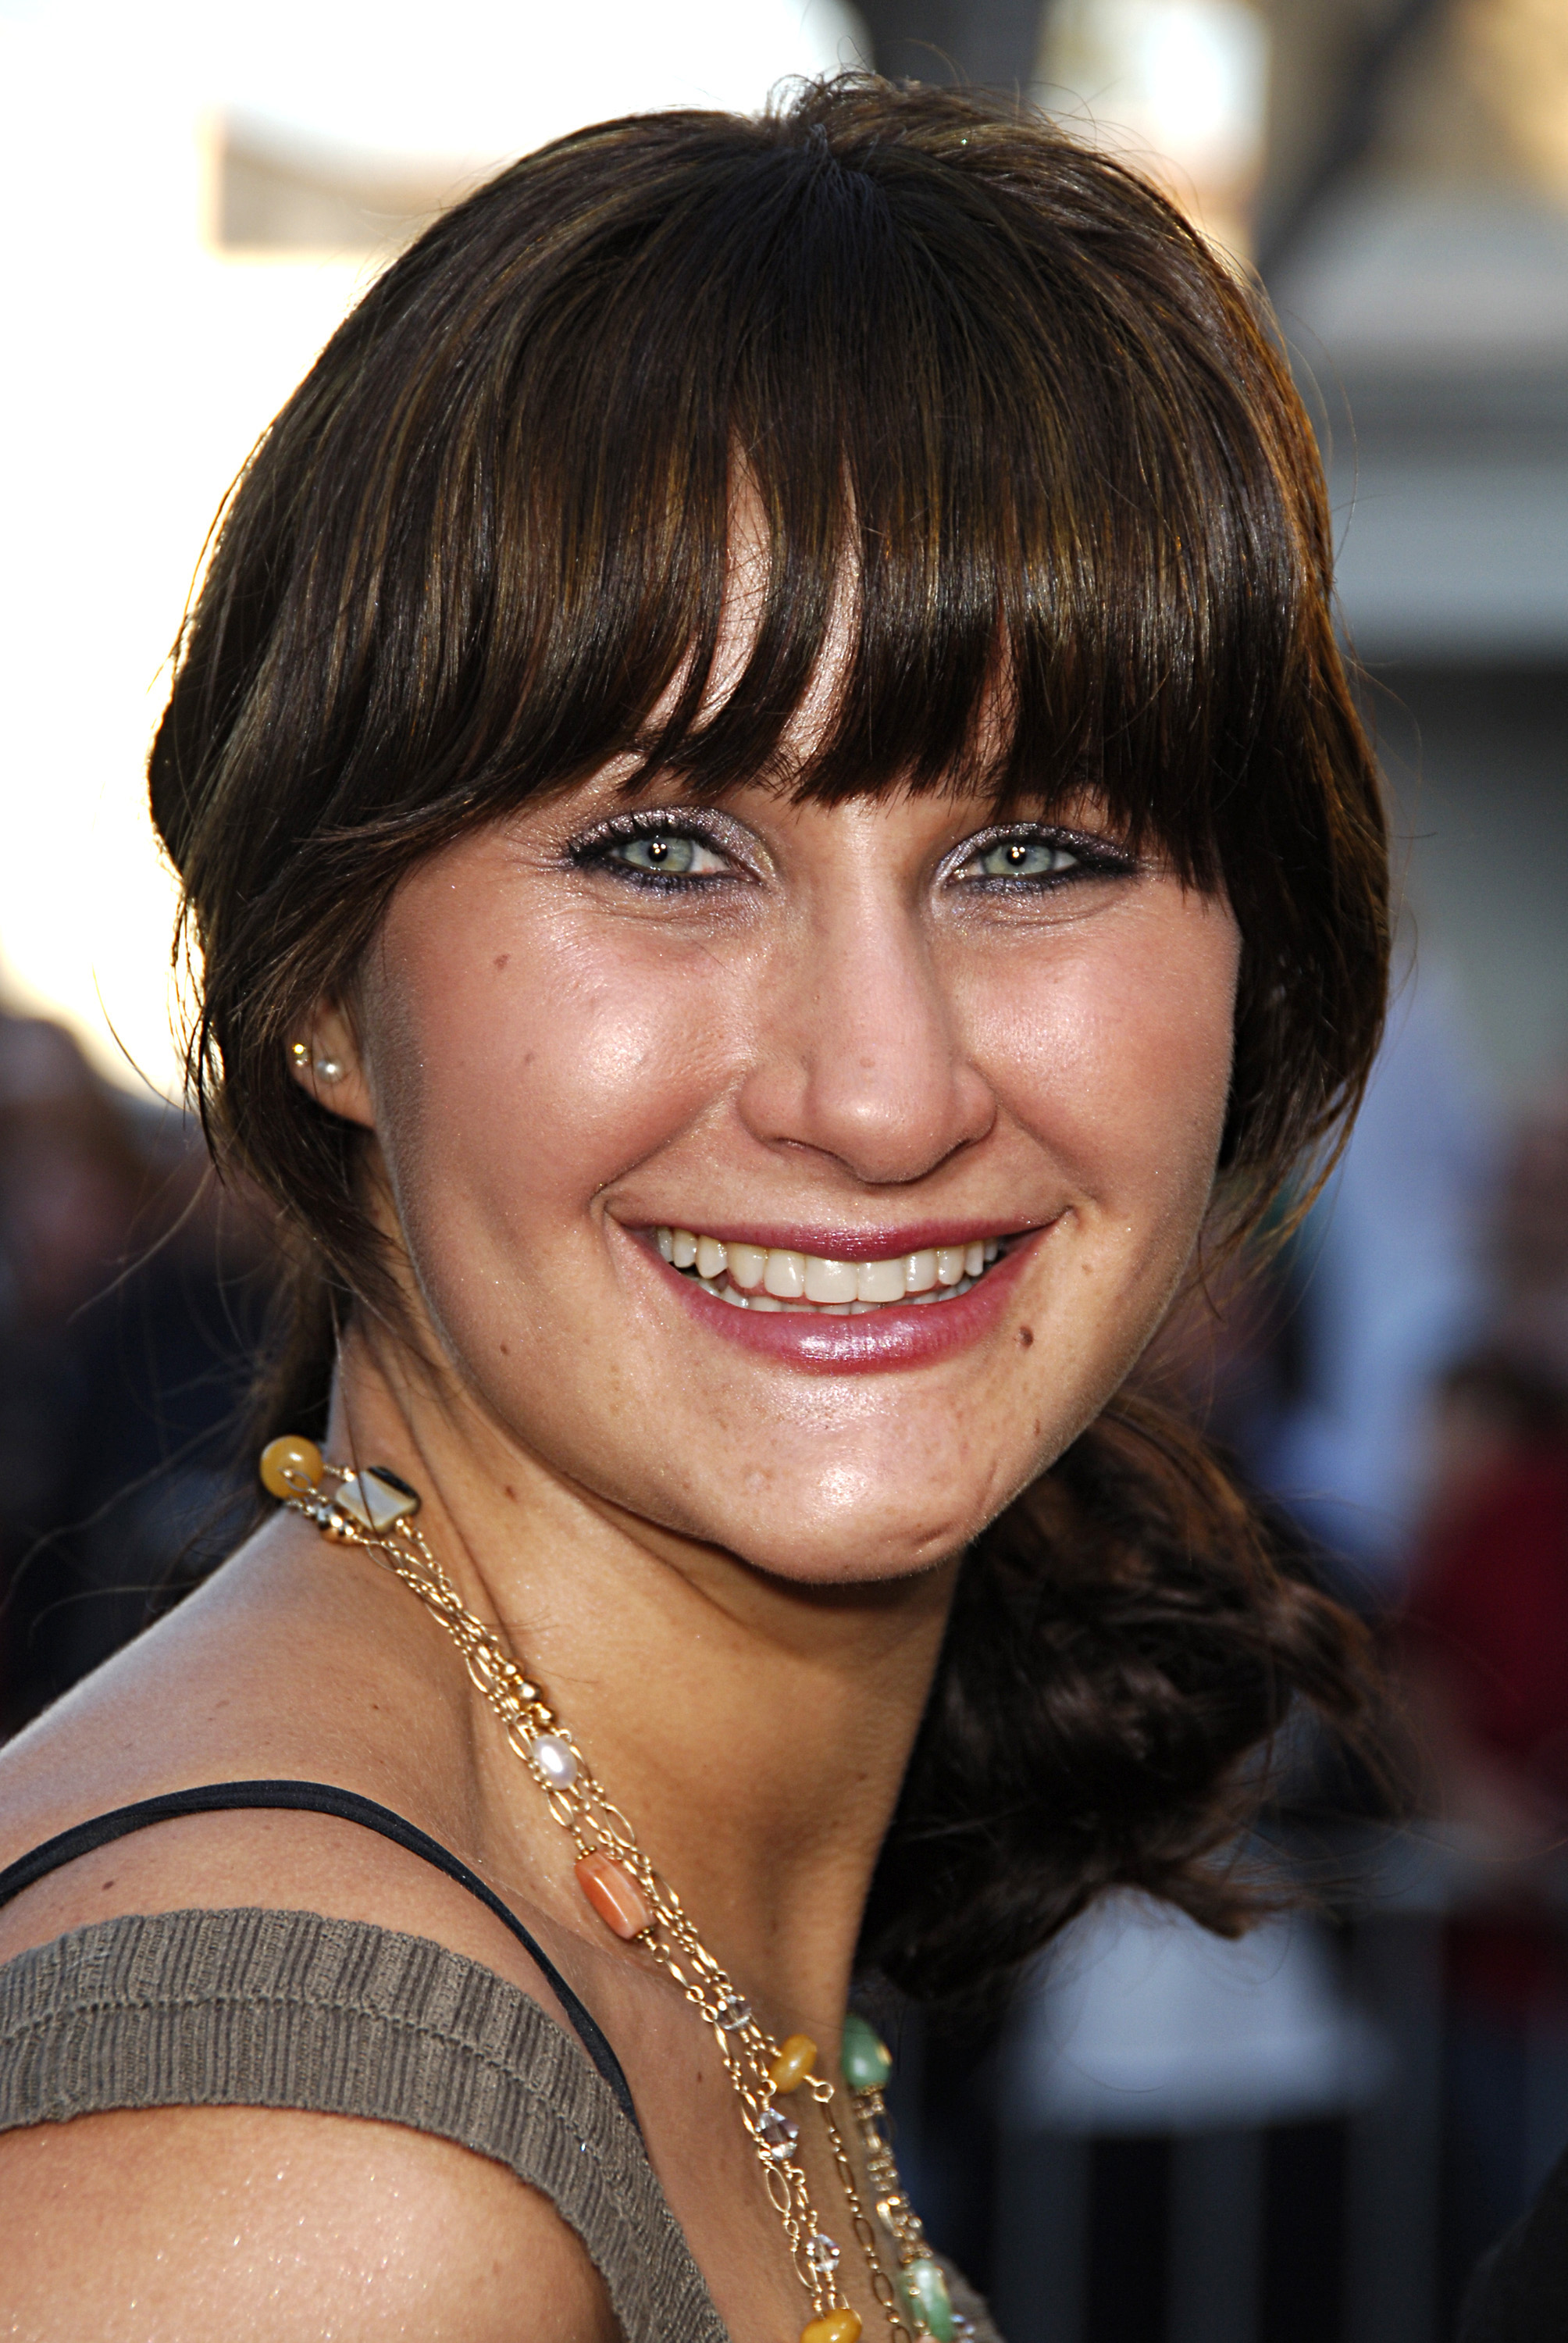 Jillian Bynes kommt zur Premiere von "The Break Up" in Los Angeles in Westwood, Kalifornien. | Quelle: Getty Images